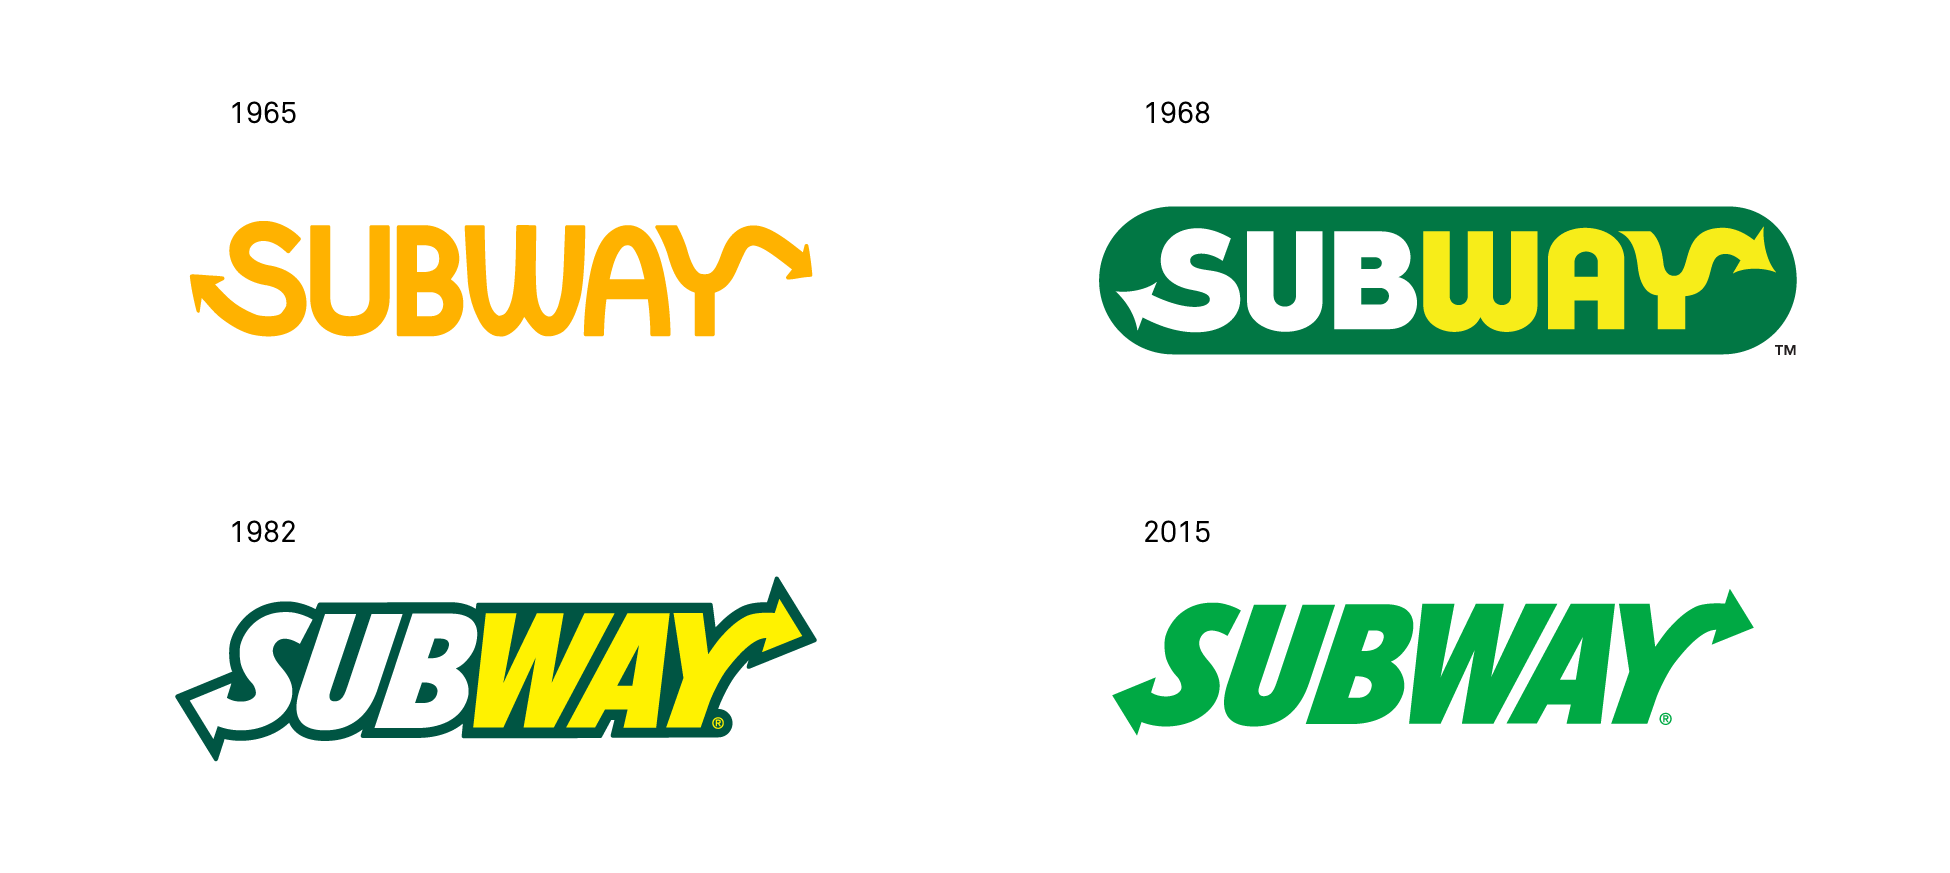 Subway Logo - Le nouveau logo de subway date de 1968 !éine